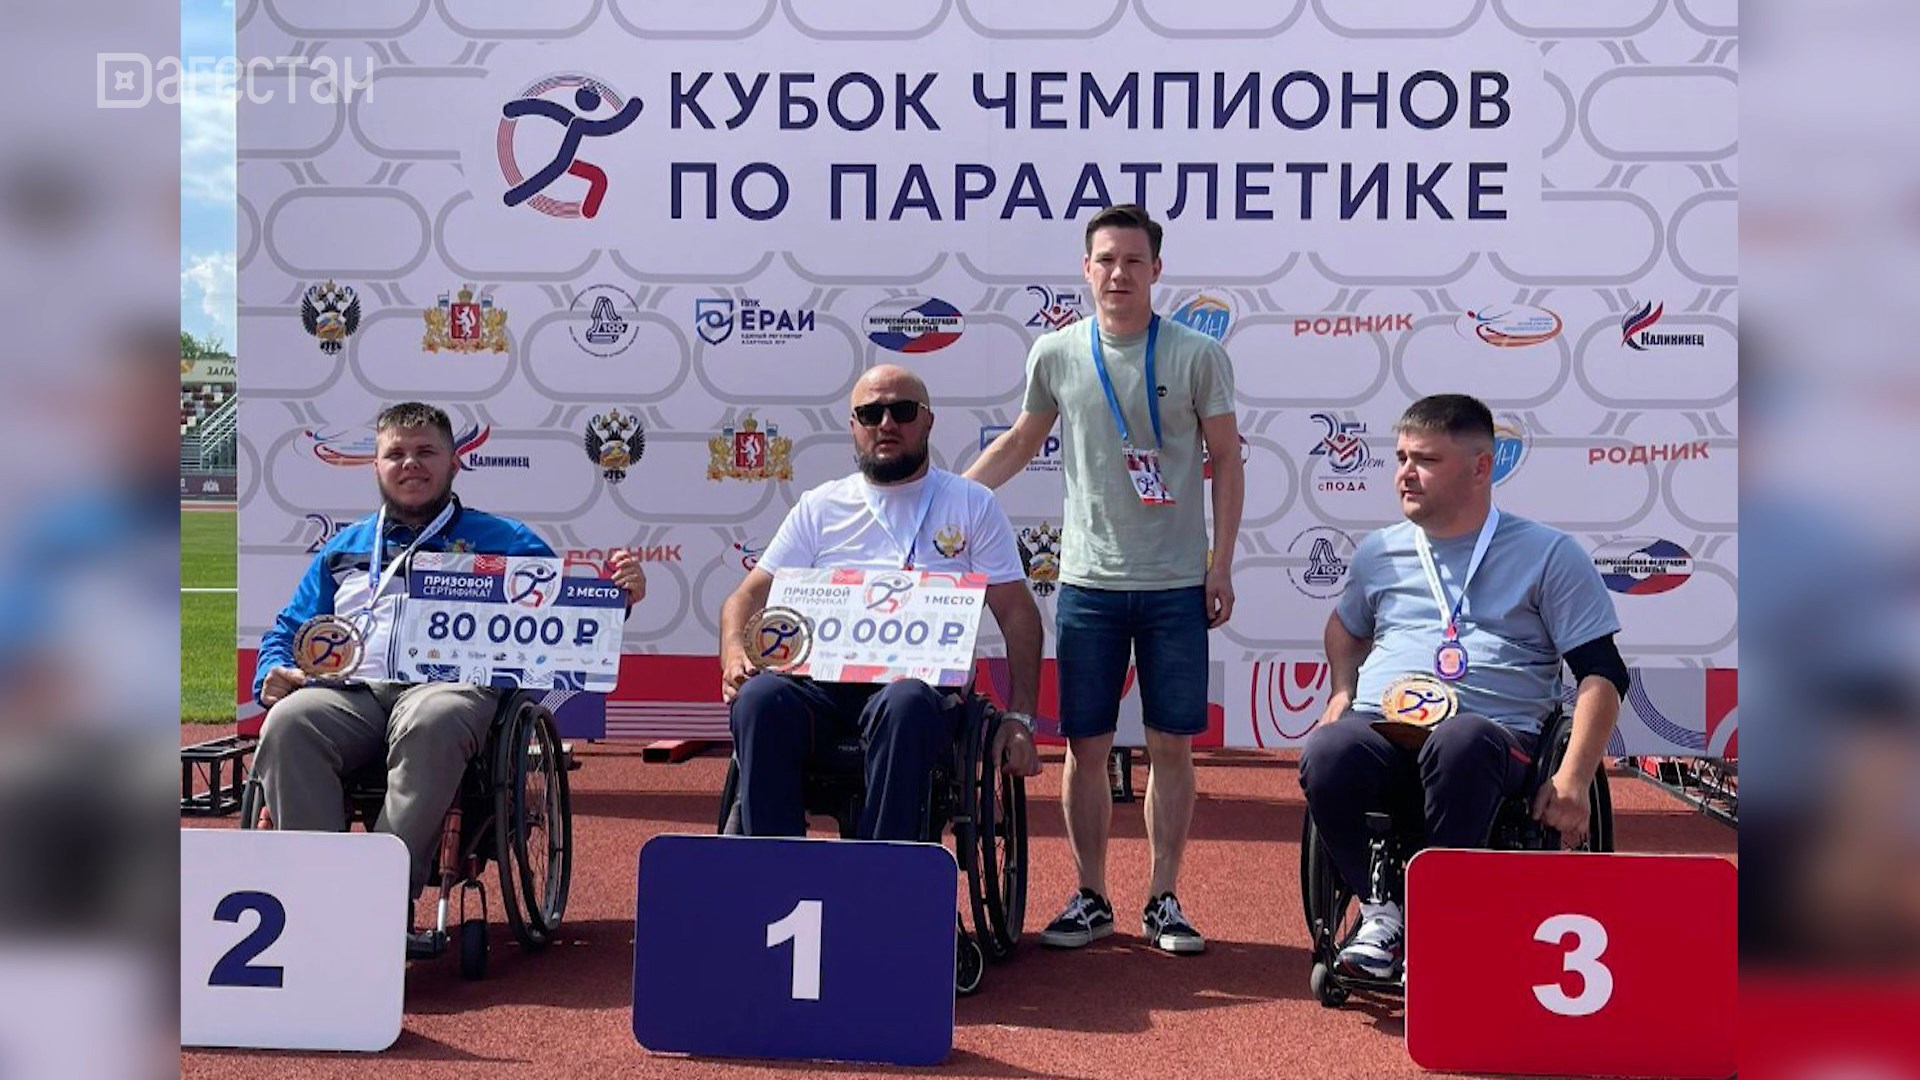 Дагестанцы завоевали девять медалей на Кубке чемпионов по параатлетике